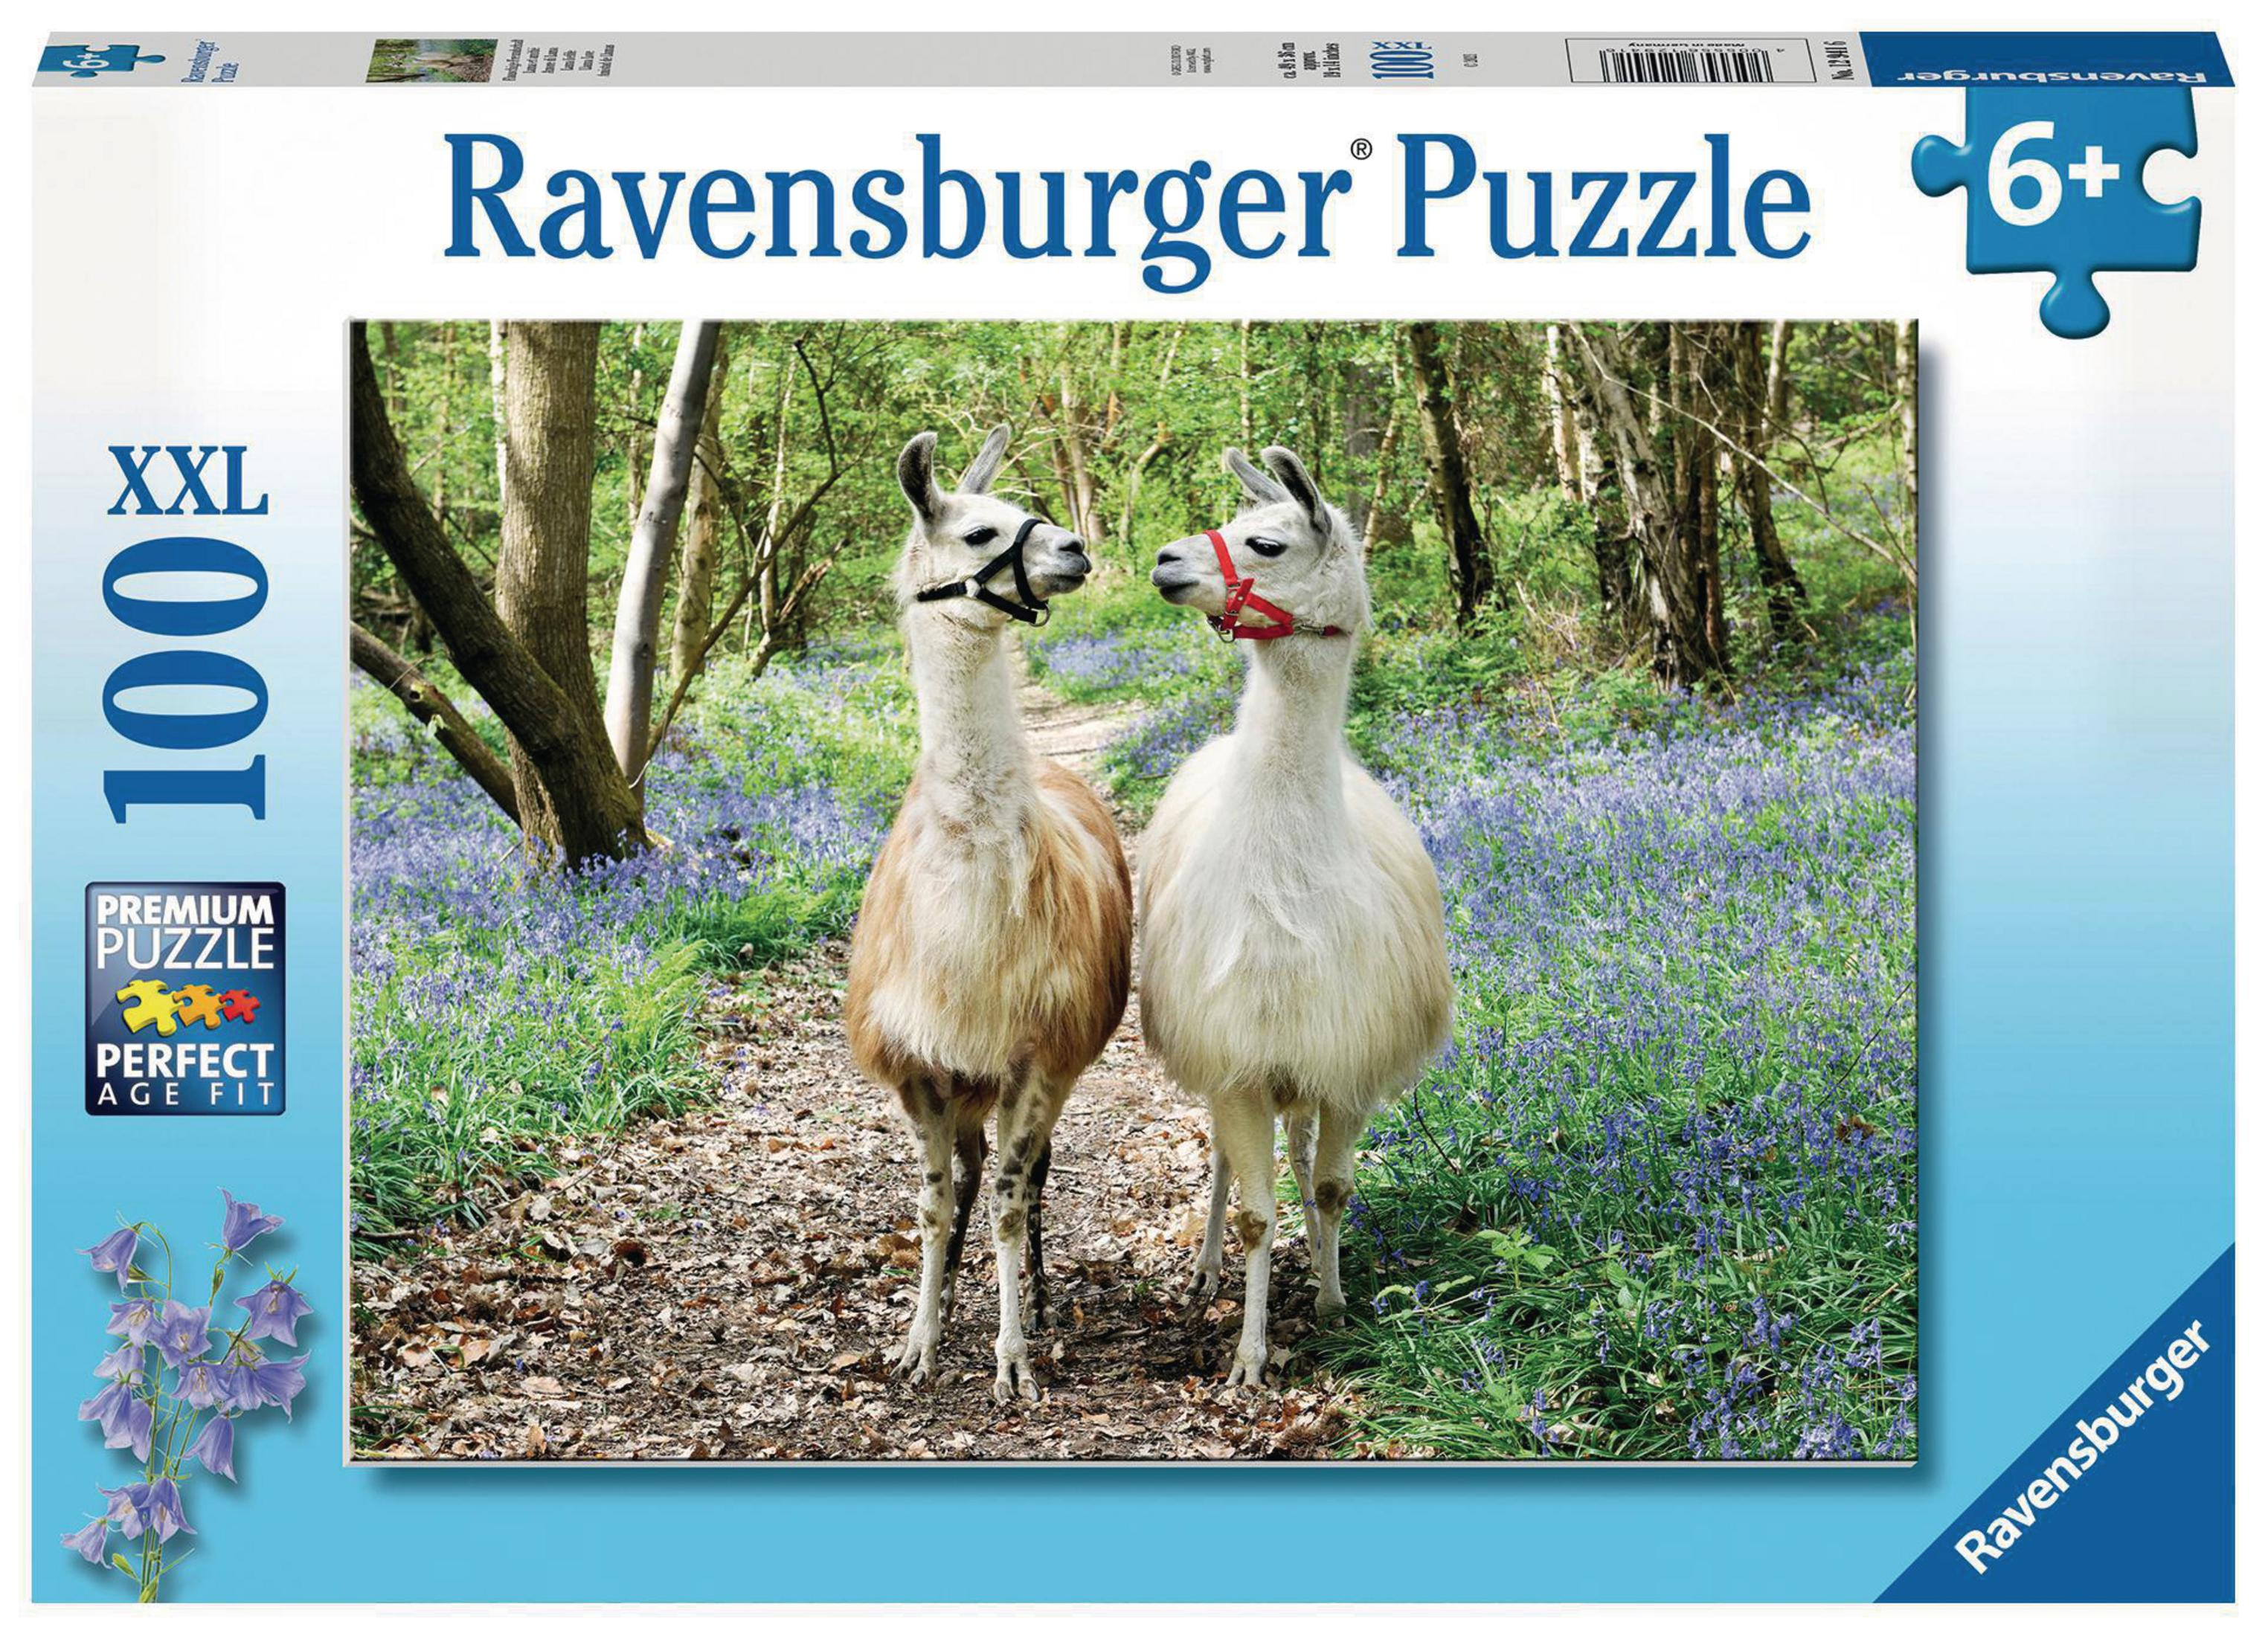 FLAUSCHIGE 12941 RAVENSBURGER FREUNDSCHAFT Puzzle